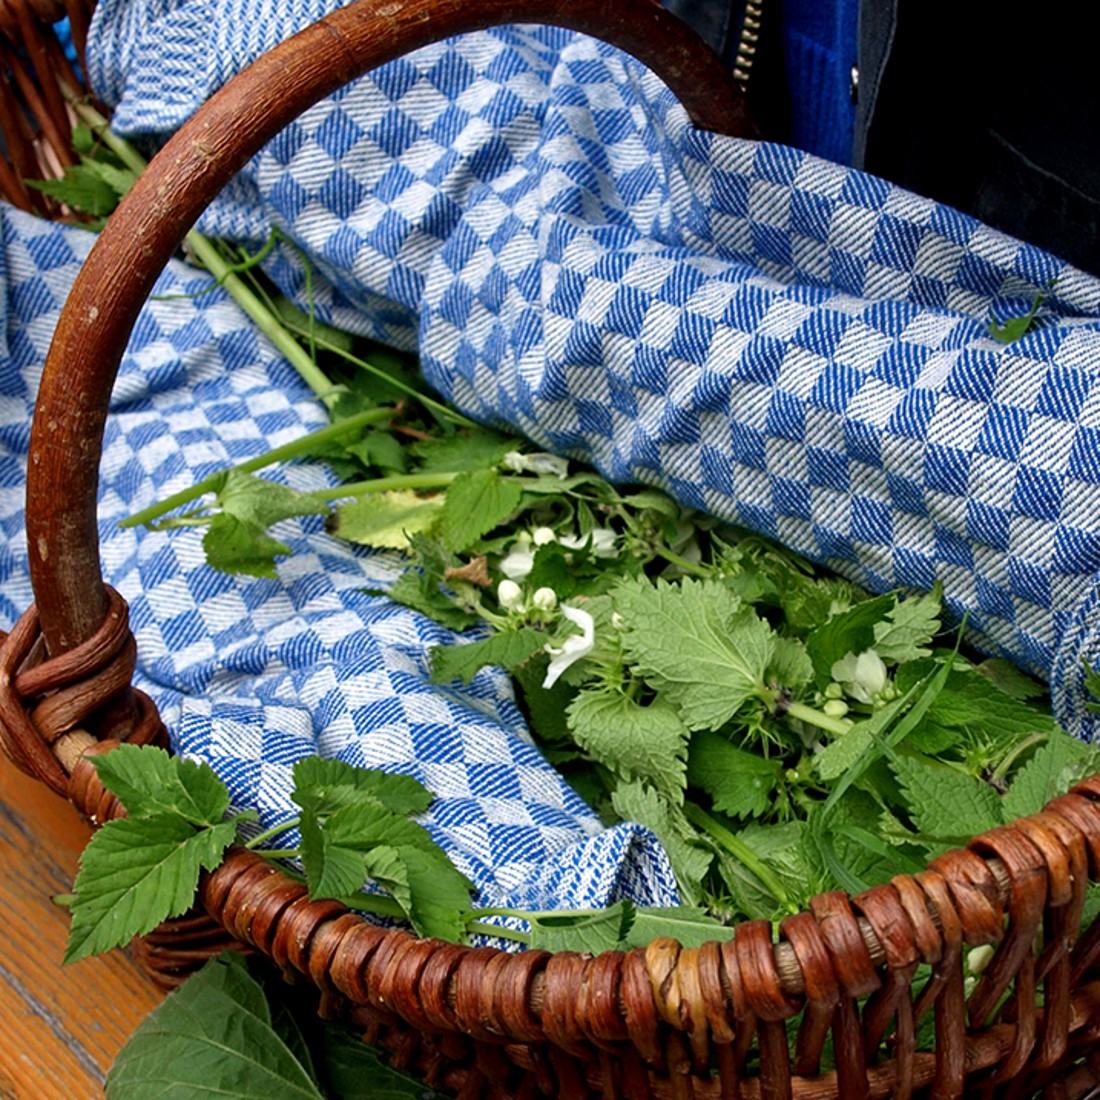 Kräuter in einem Krob auf einem blau-weiß karriertem Tuch